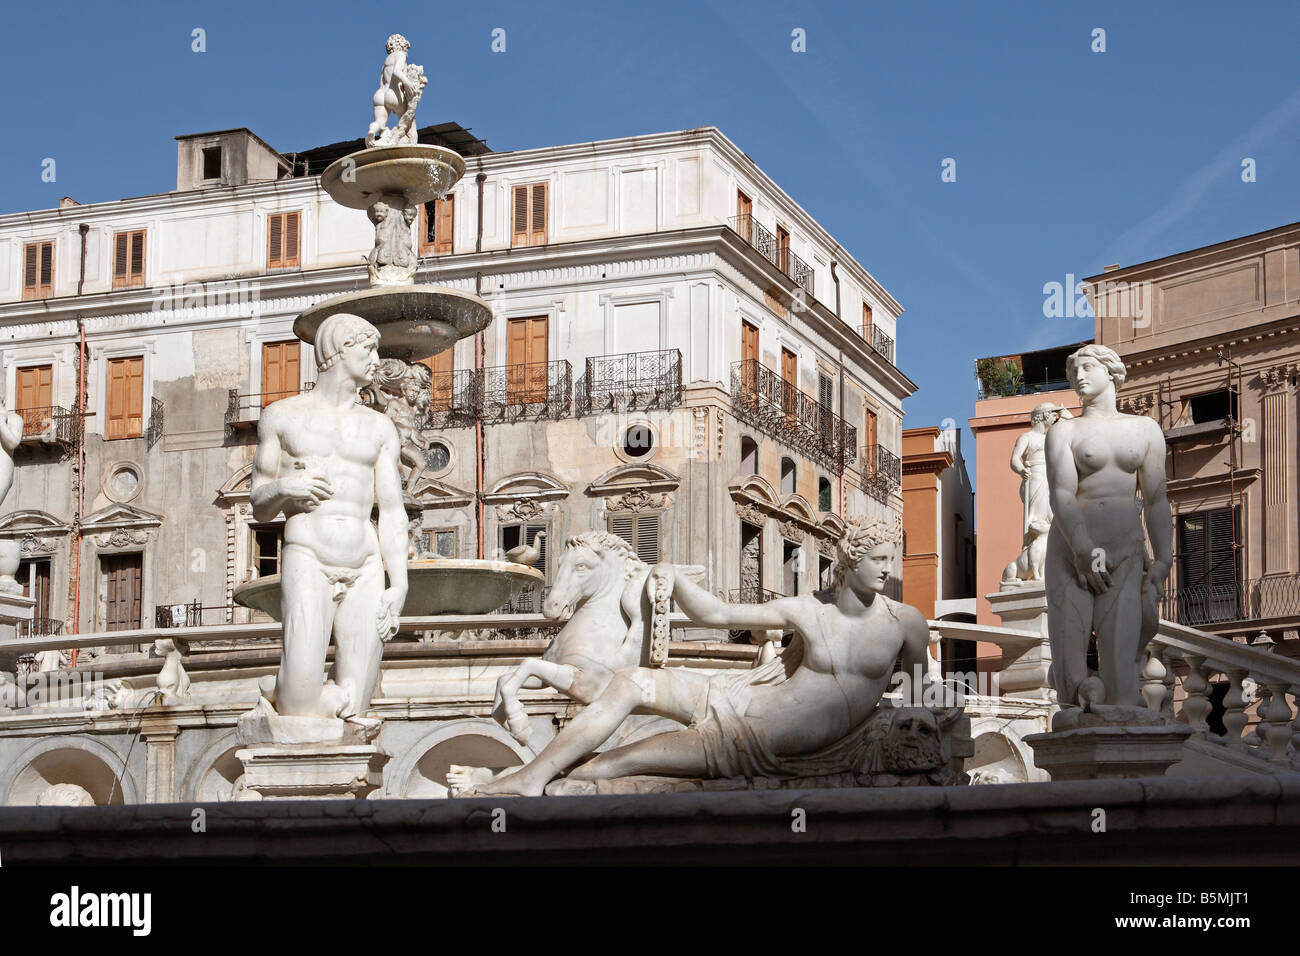 Fontana Pretoria, Piazza Pretoria, Palermo, Sizilien Stockfoto